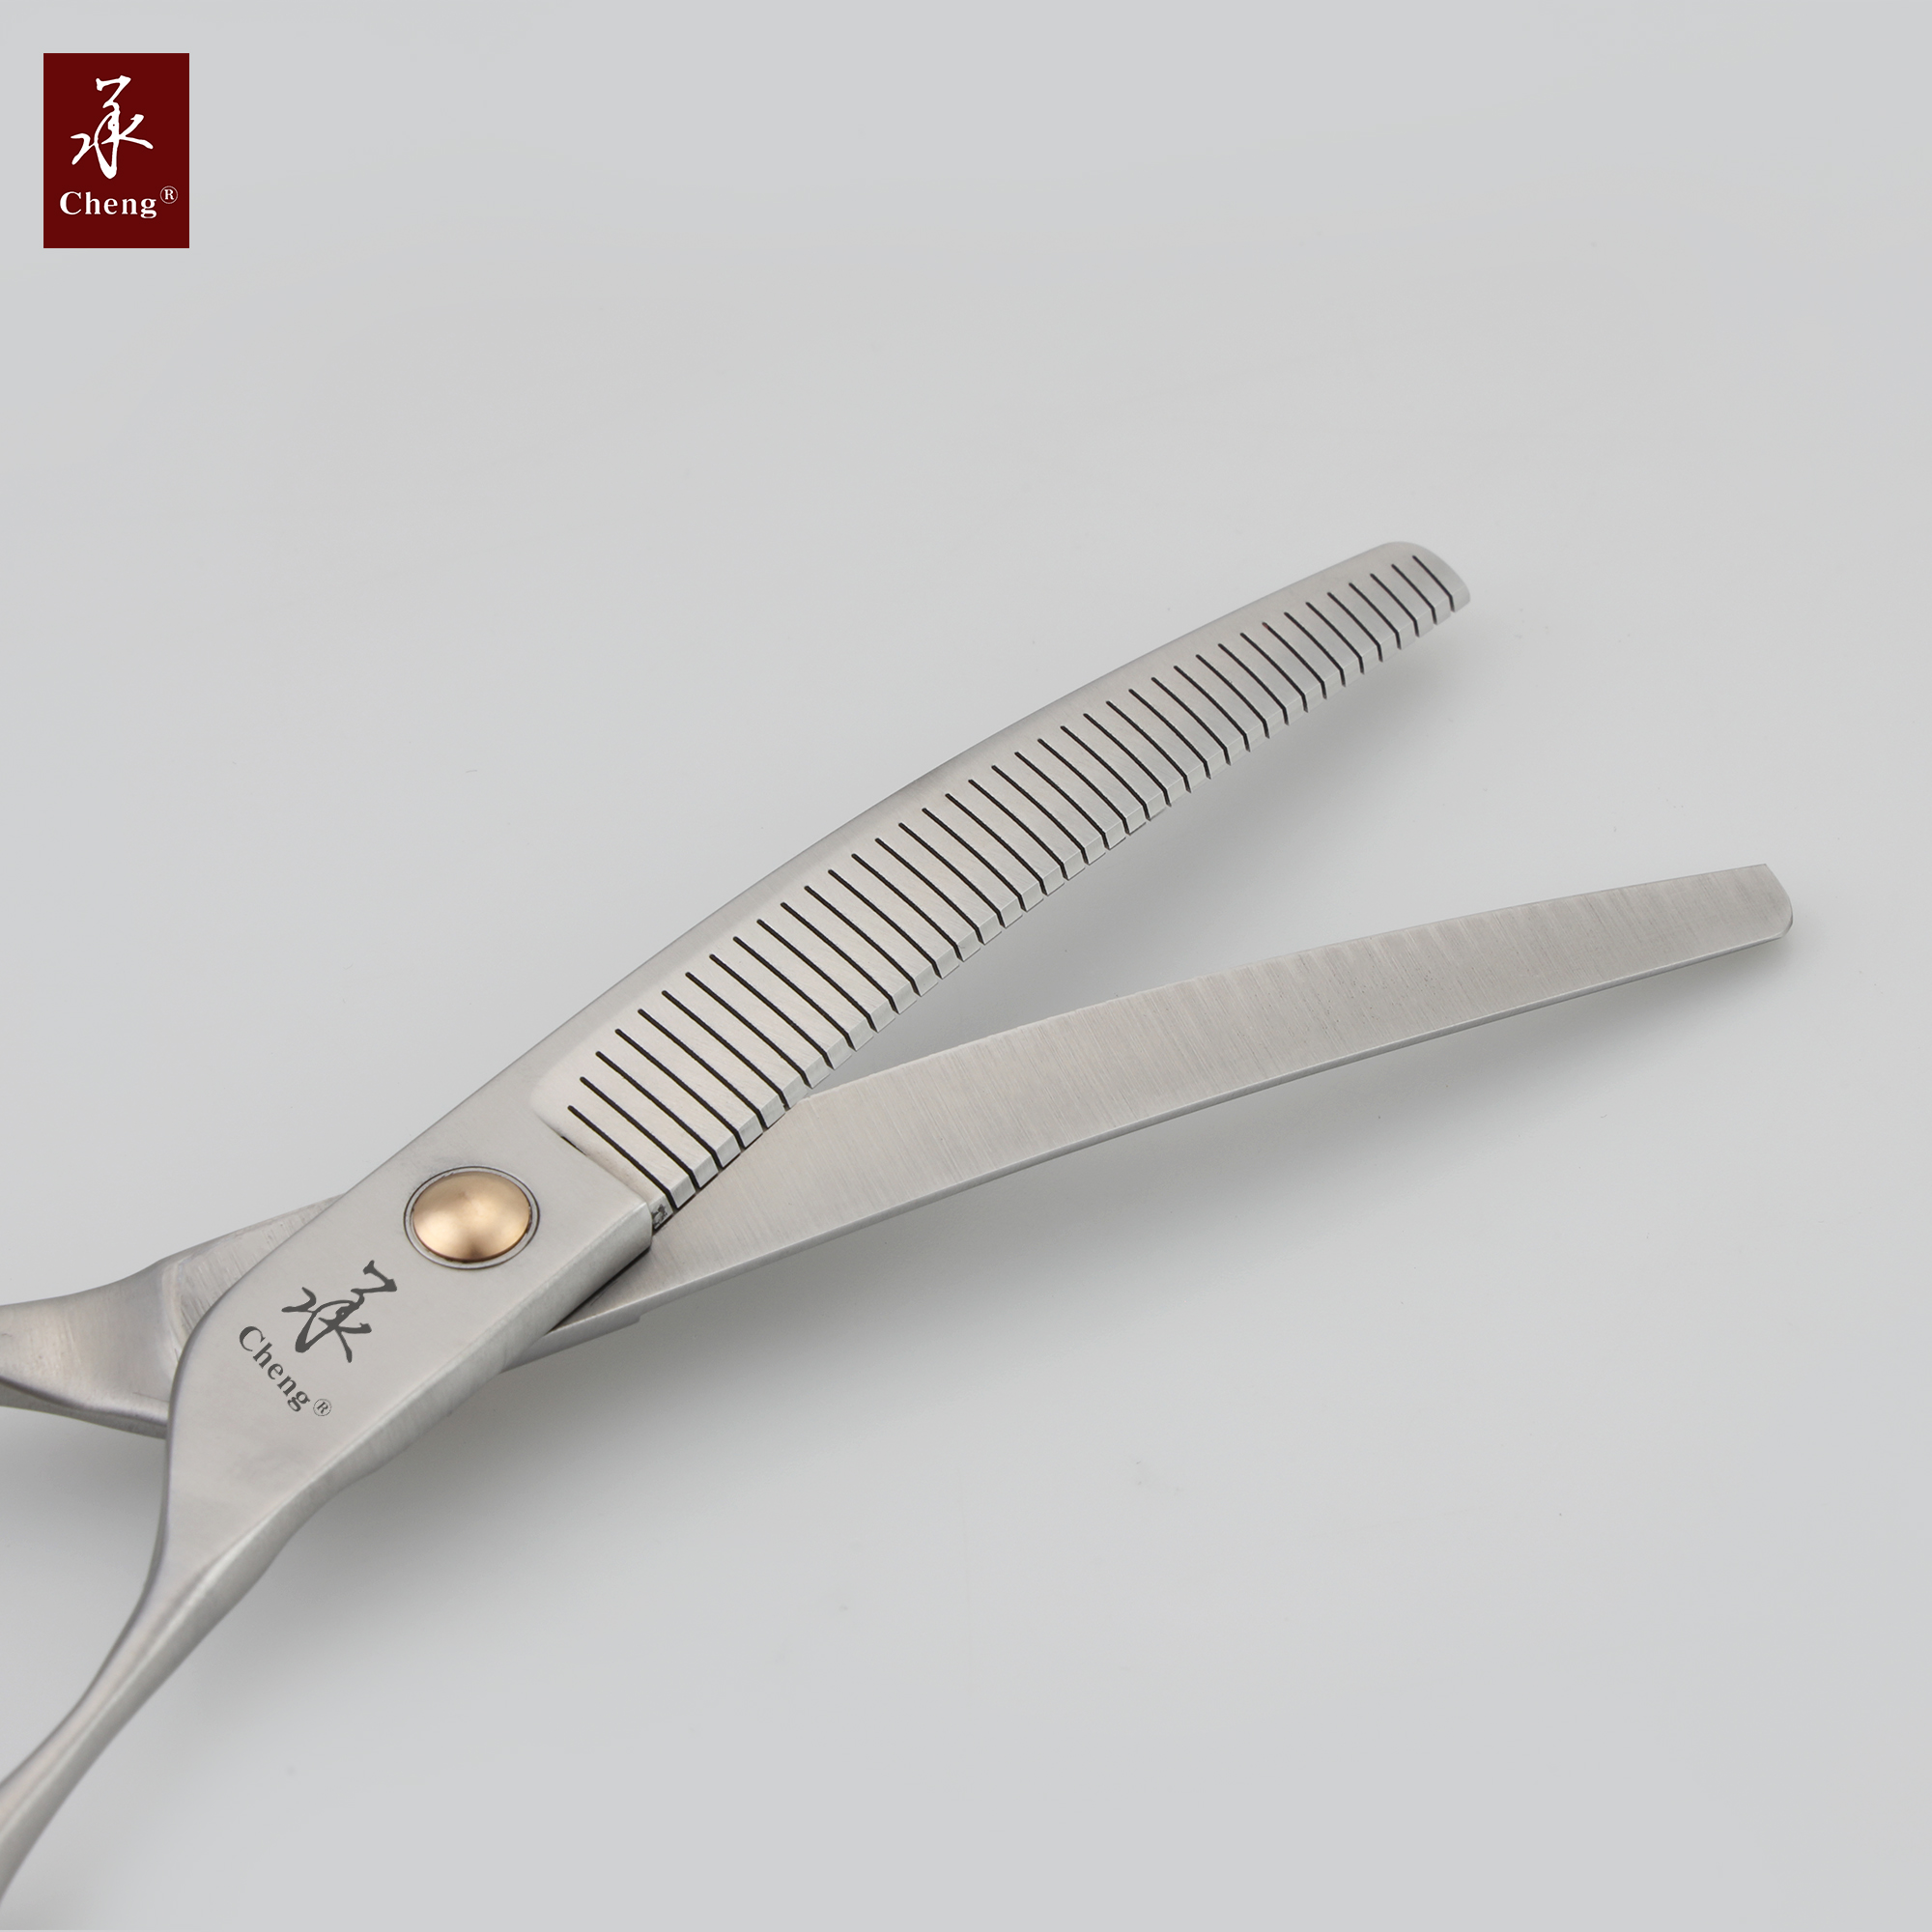 VB-625N серебряные ножницы для стрижки волос